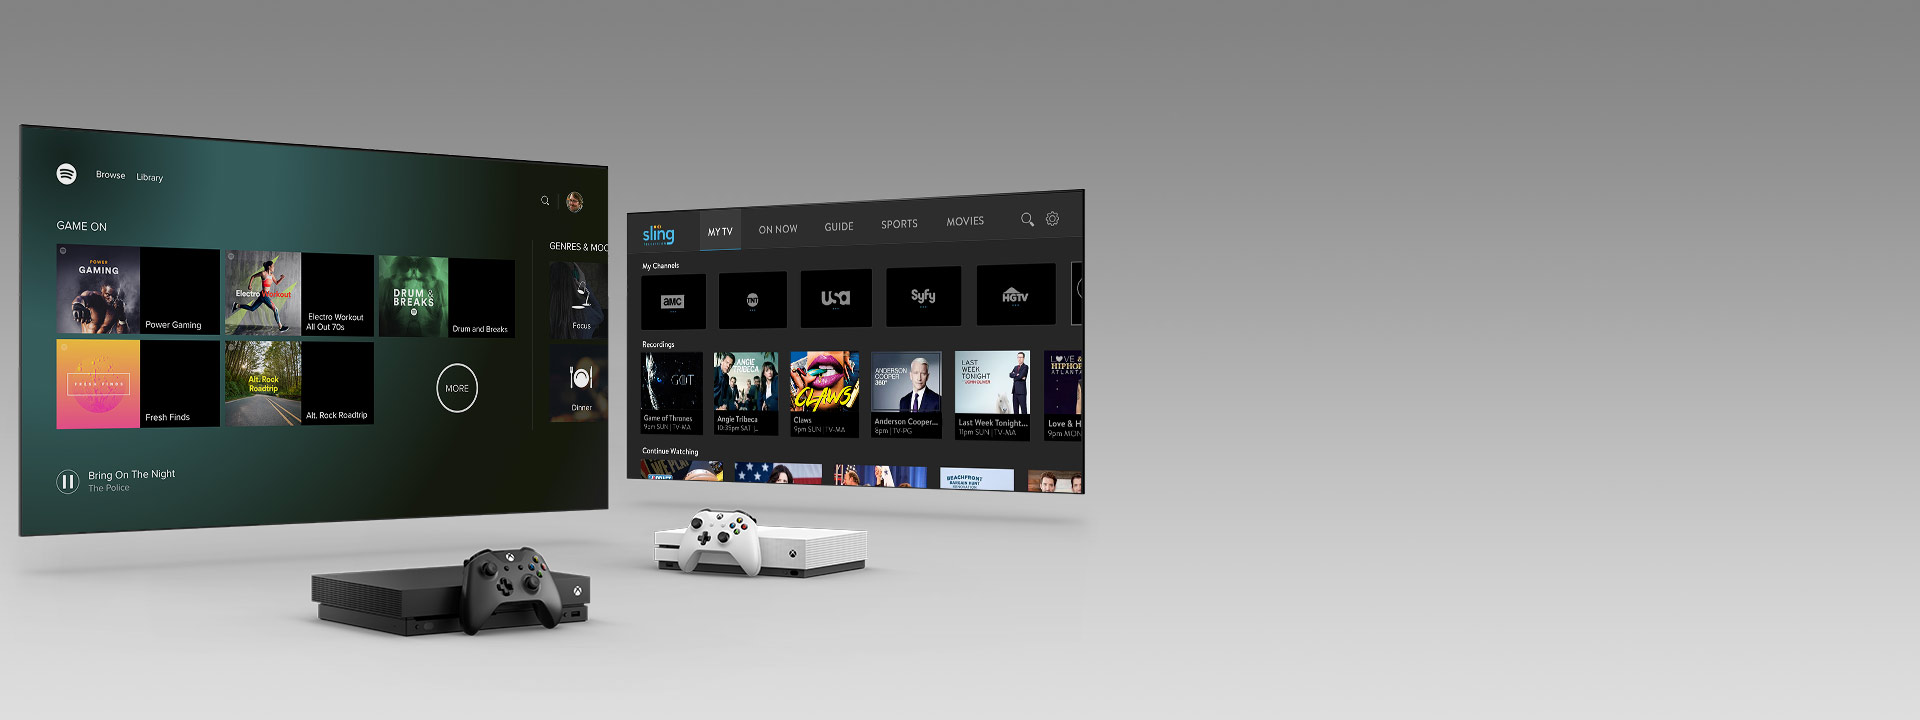 Xbox Series X i Series S z kontrolerami przed dwoma ekranami telewizyjnymi z interfejsami użytkownika aplikacji.